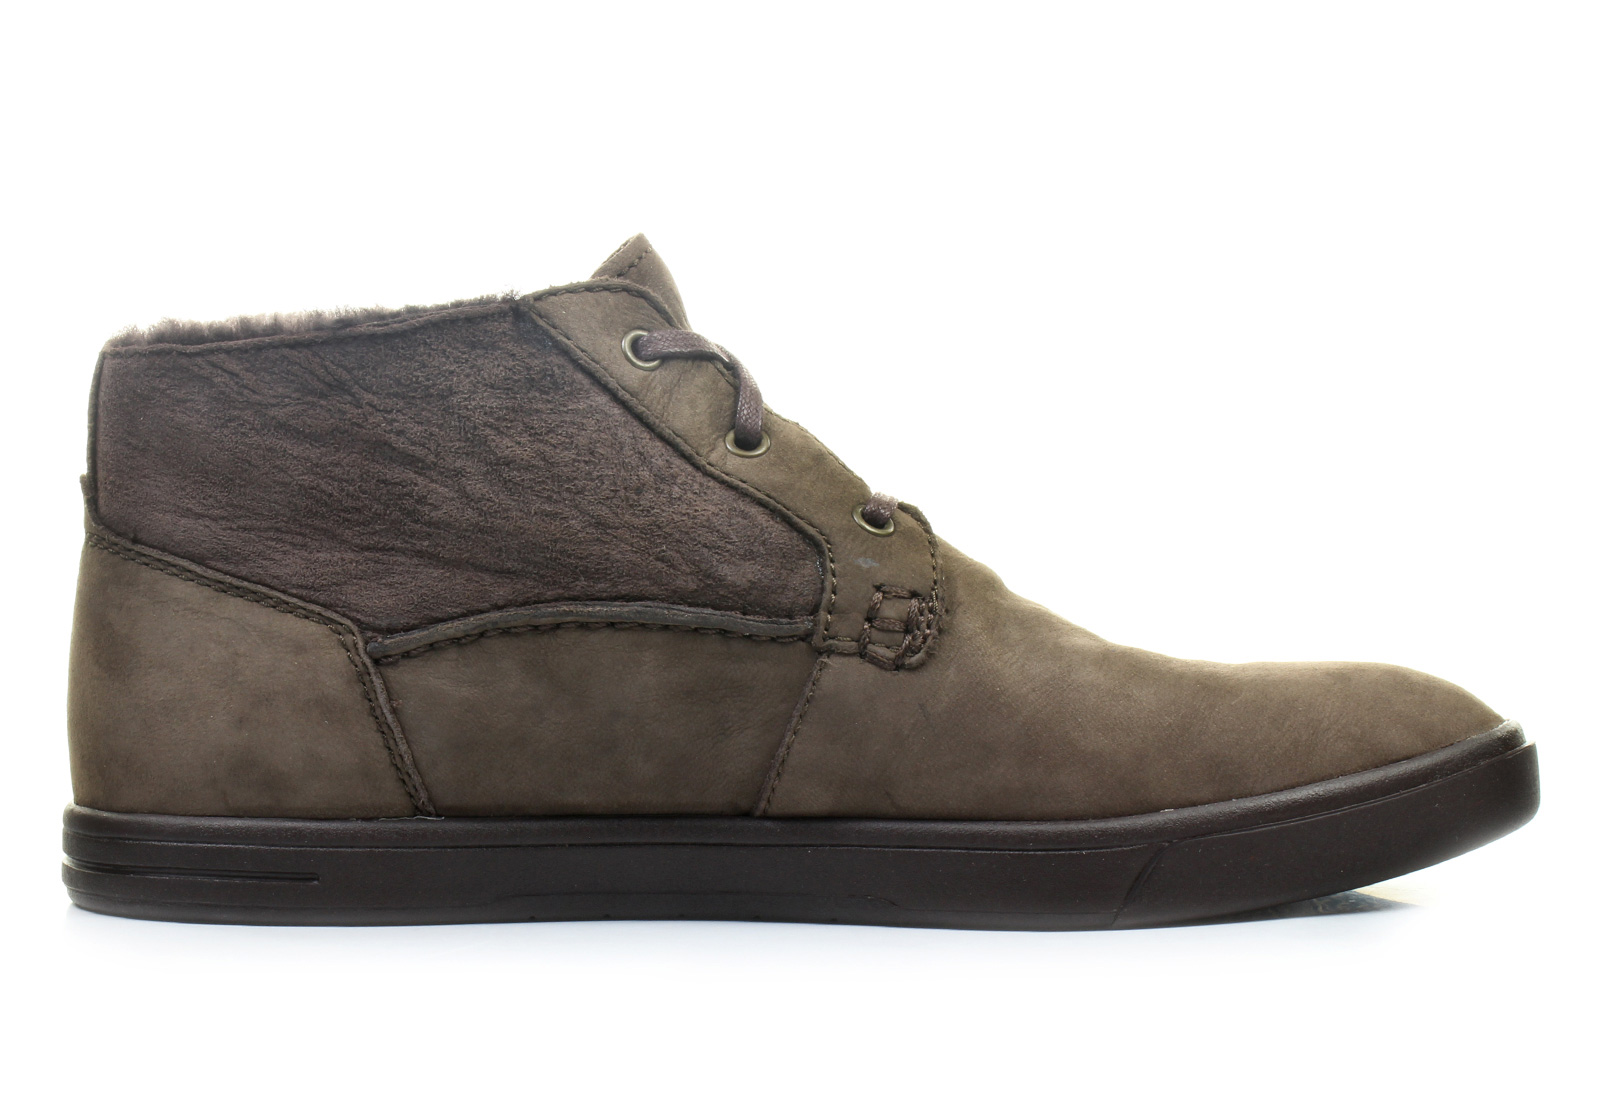 Ugg Shoes - M Kramer Wash Capra - 1009243-CHO - Online shop for ...